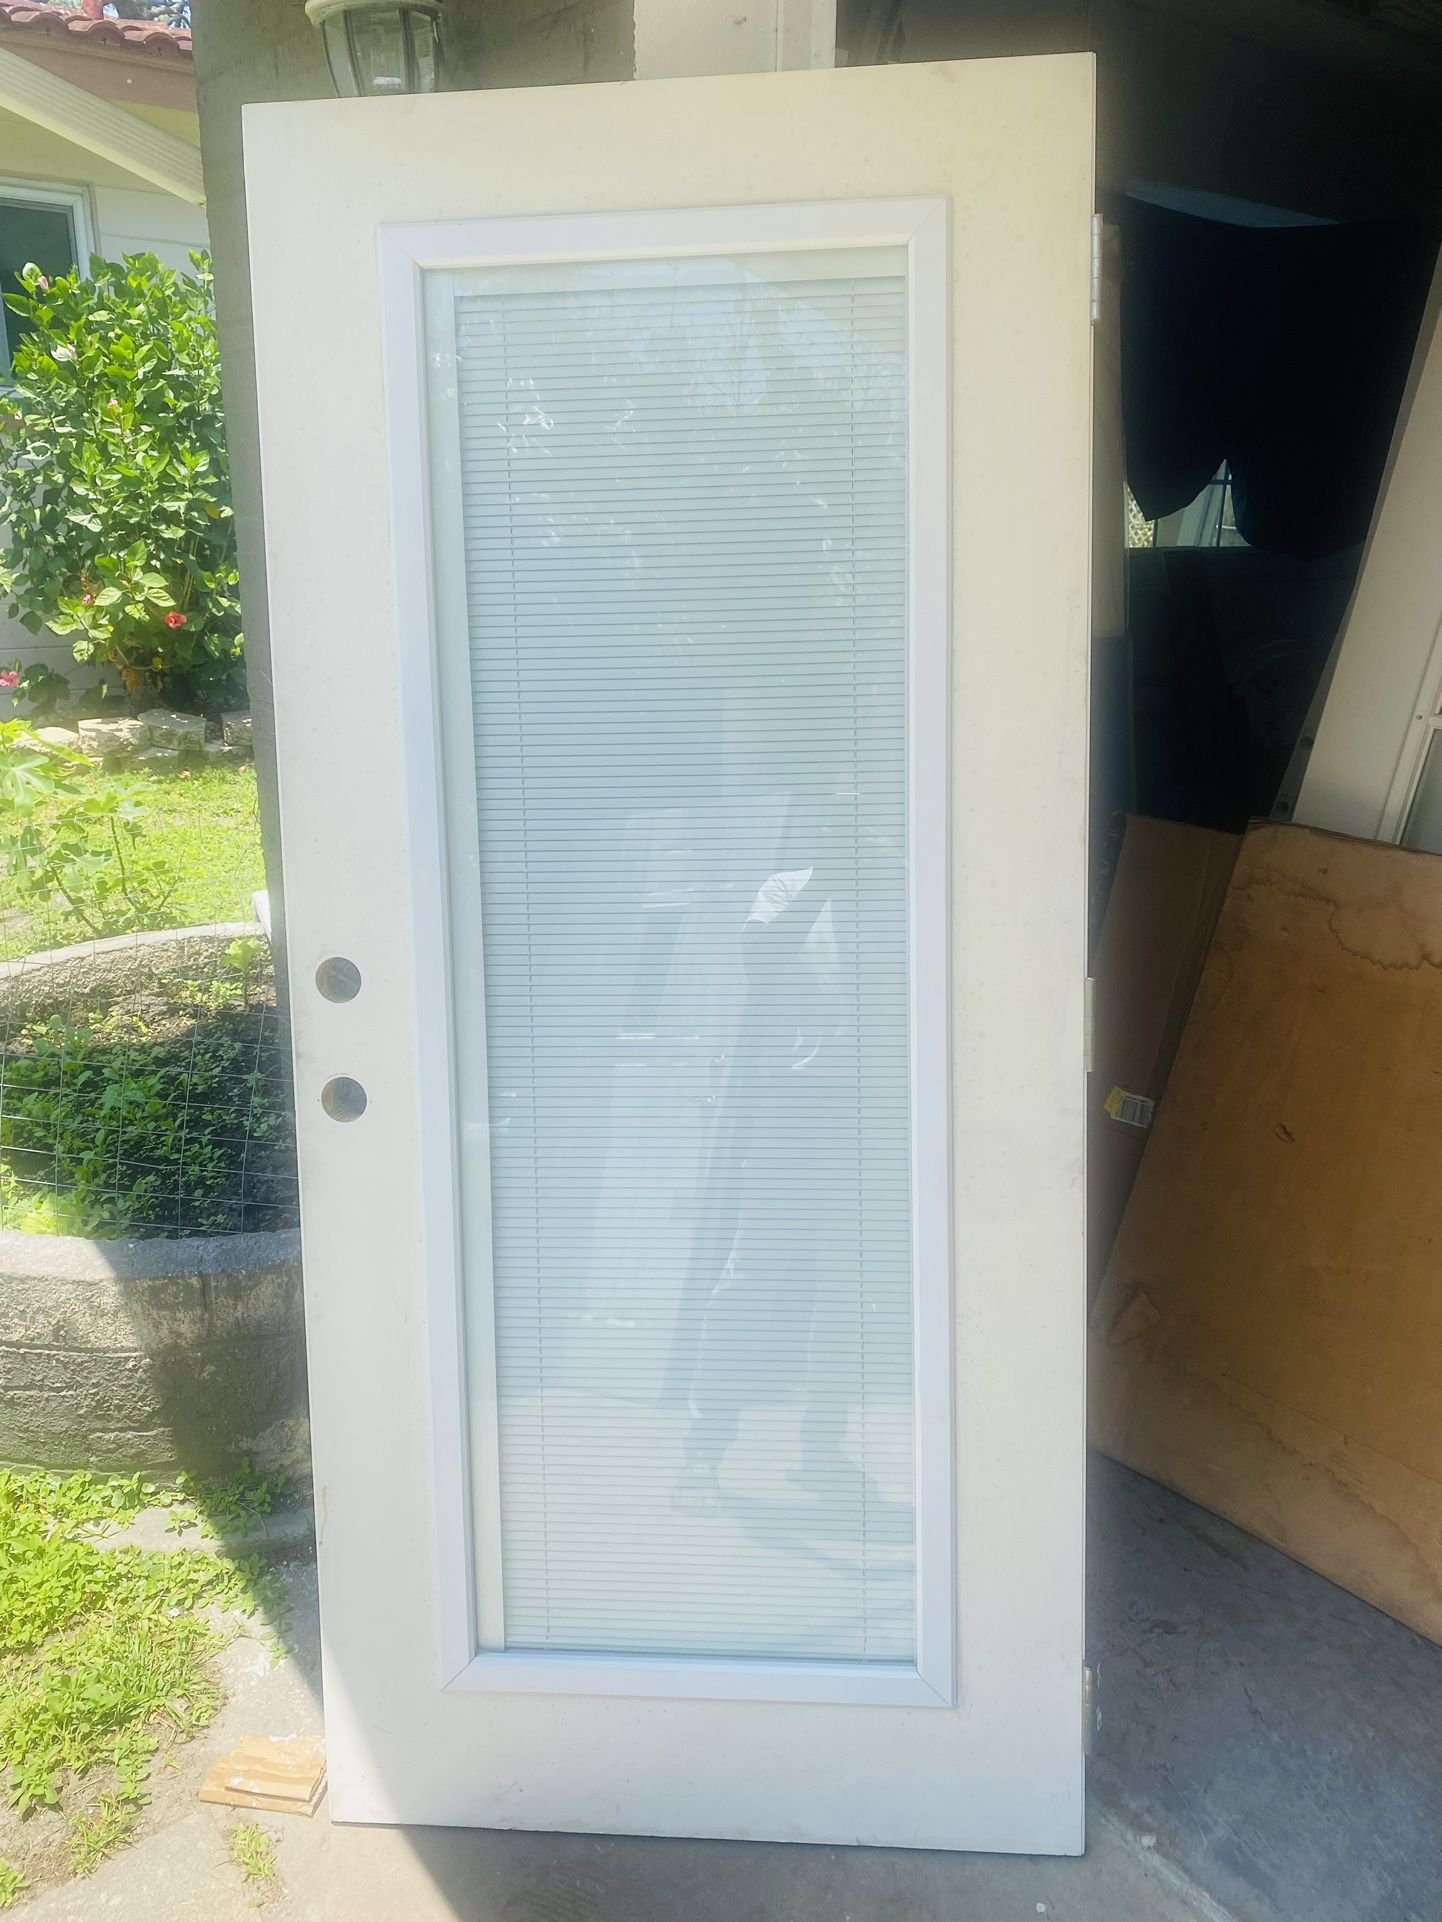 Exterior Impact Door With Built In Blind 36x78.5